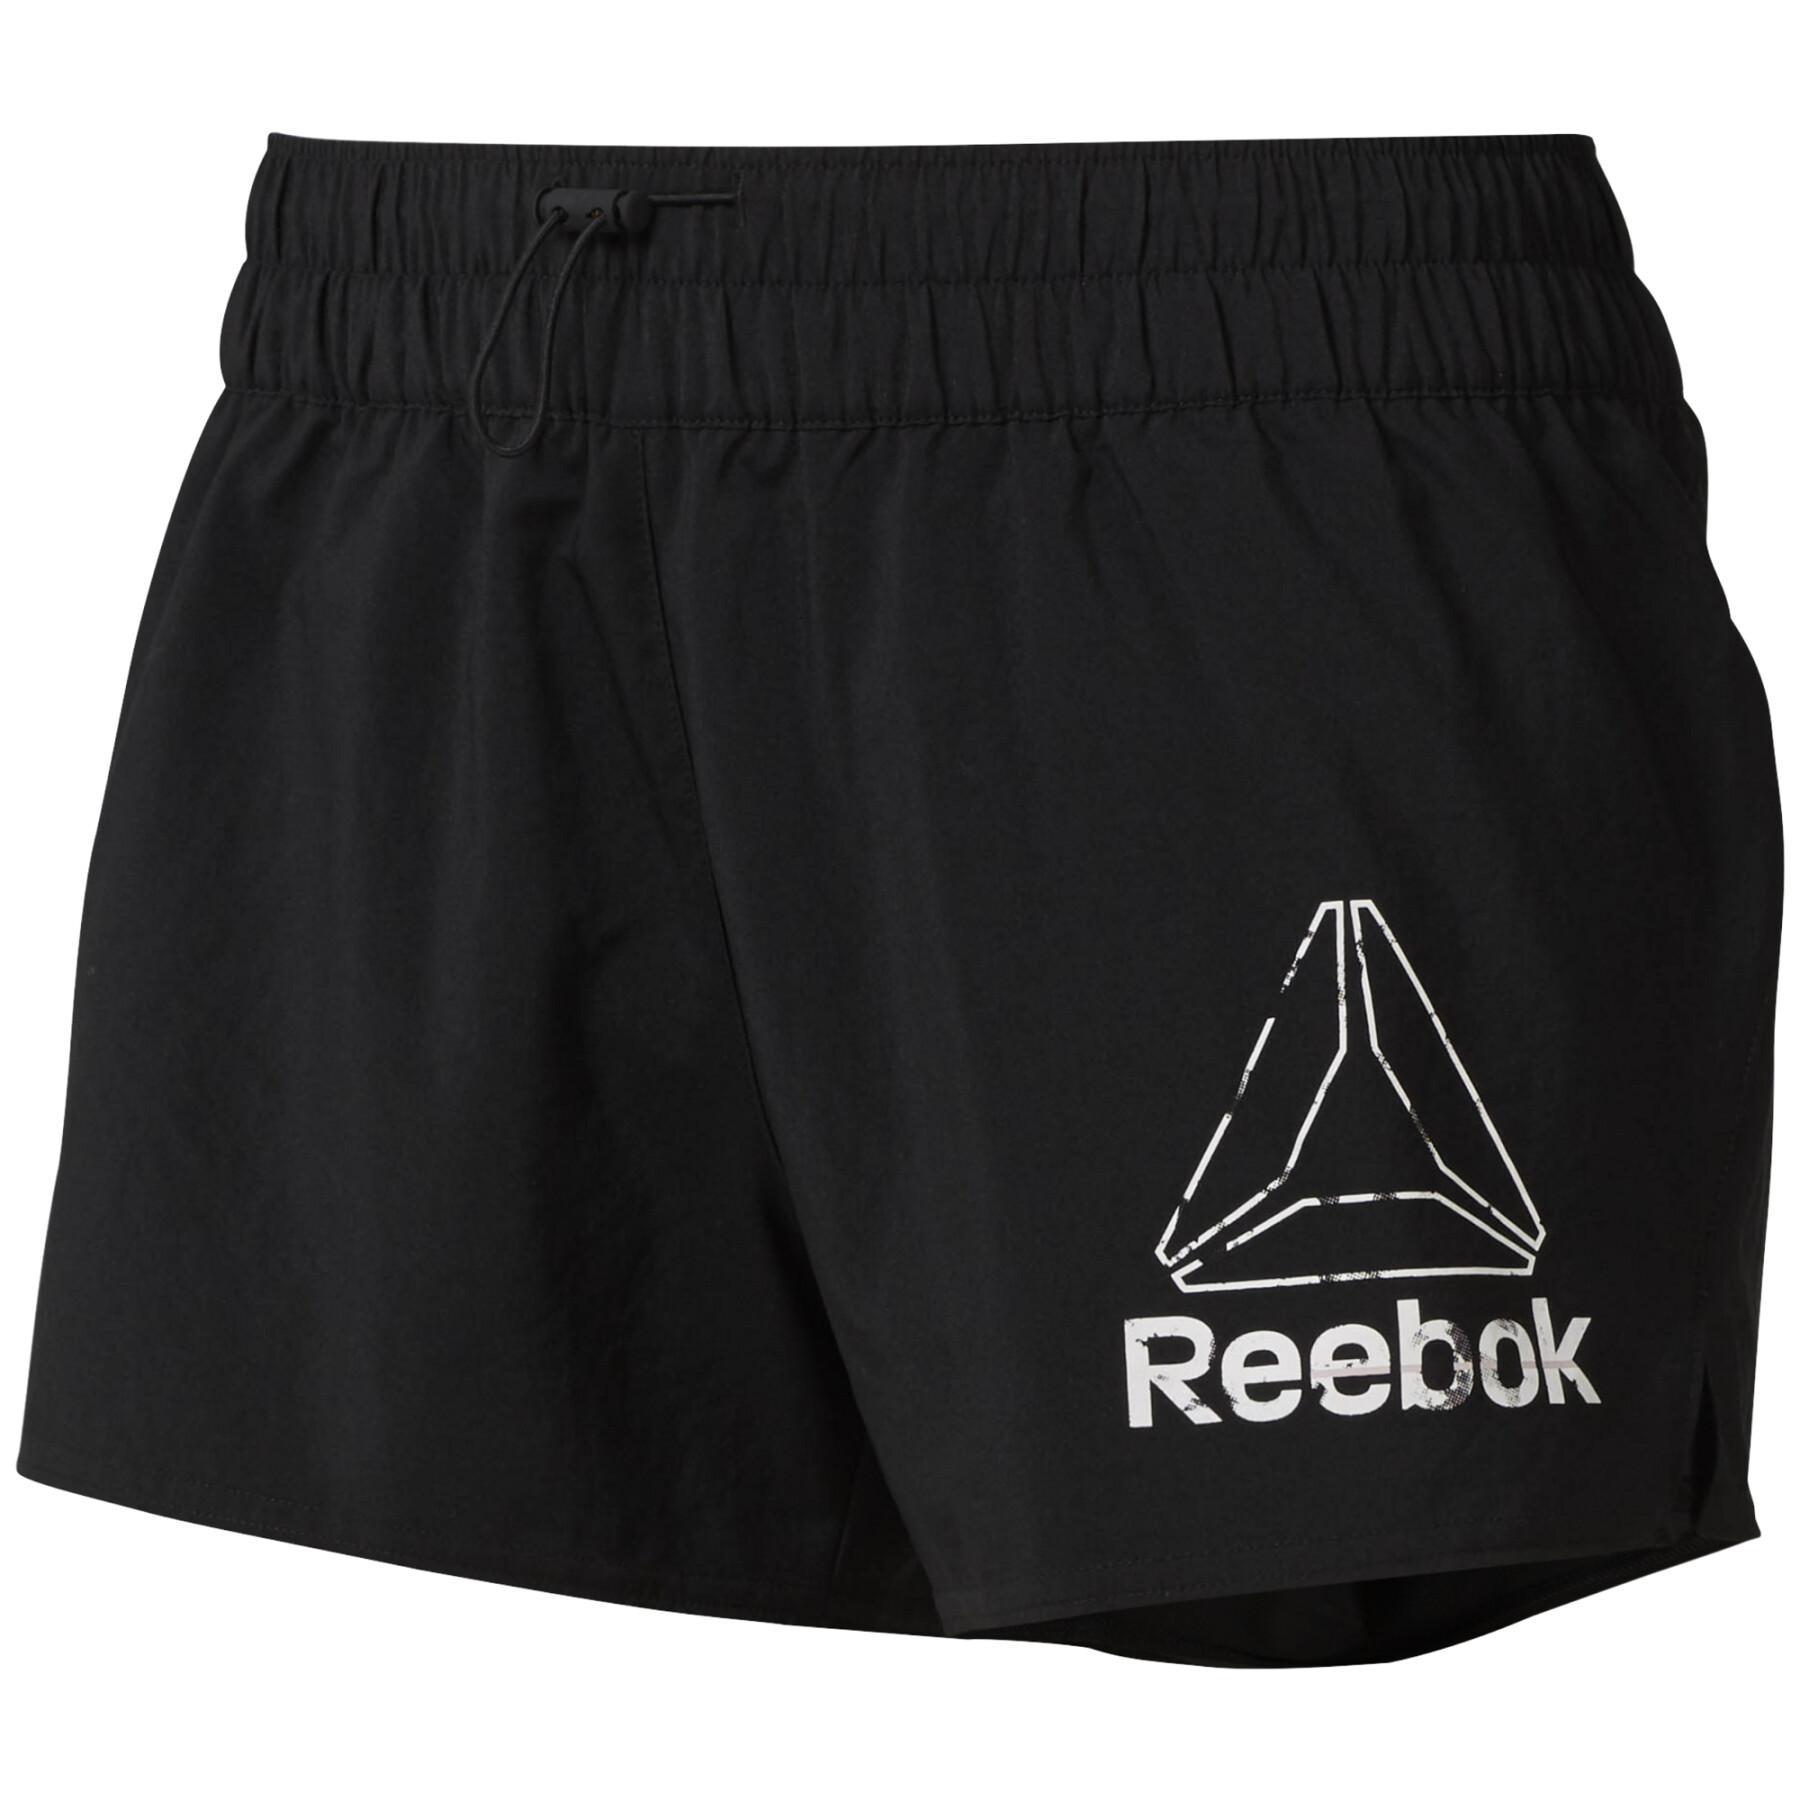 Women's shorts Reebok Gyman Two-in-One